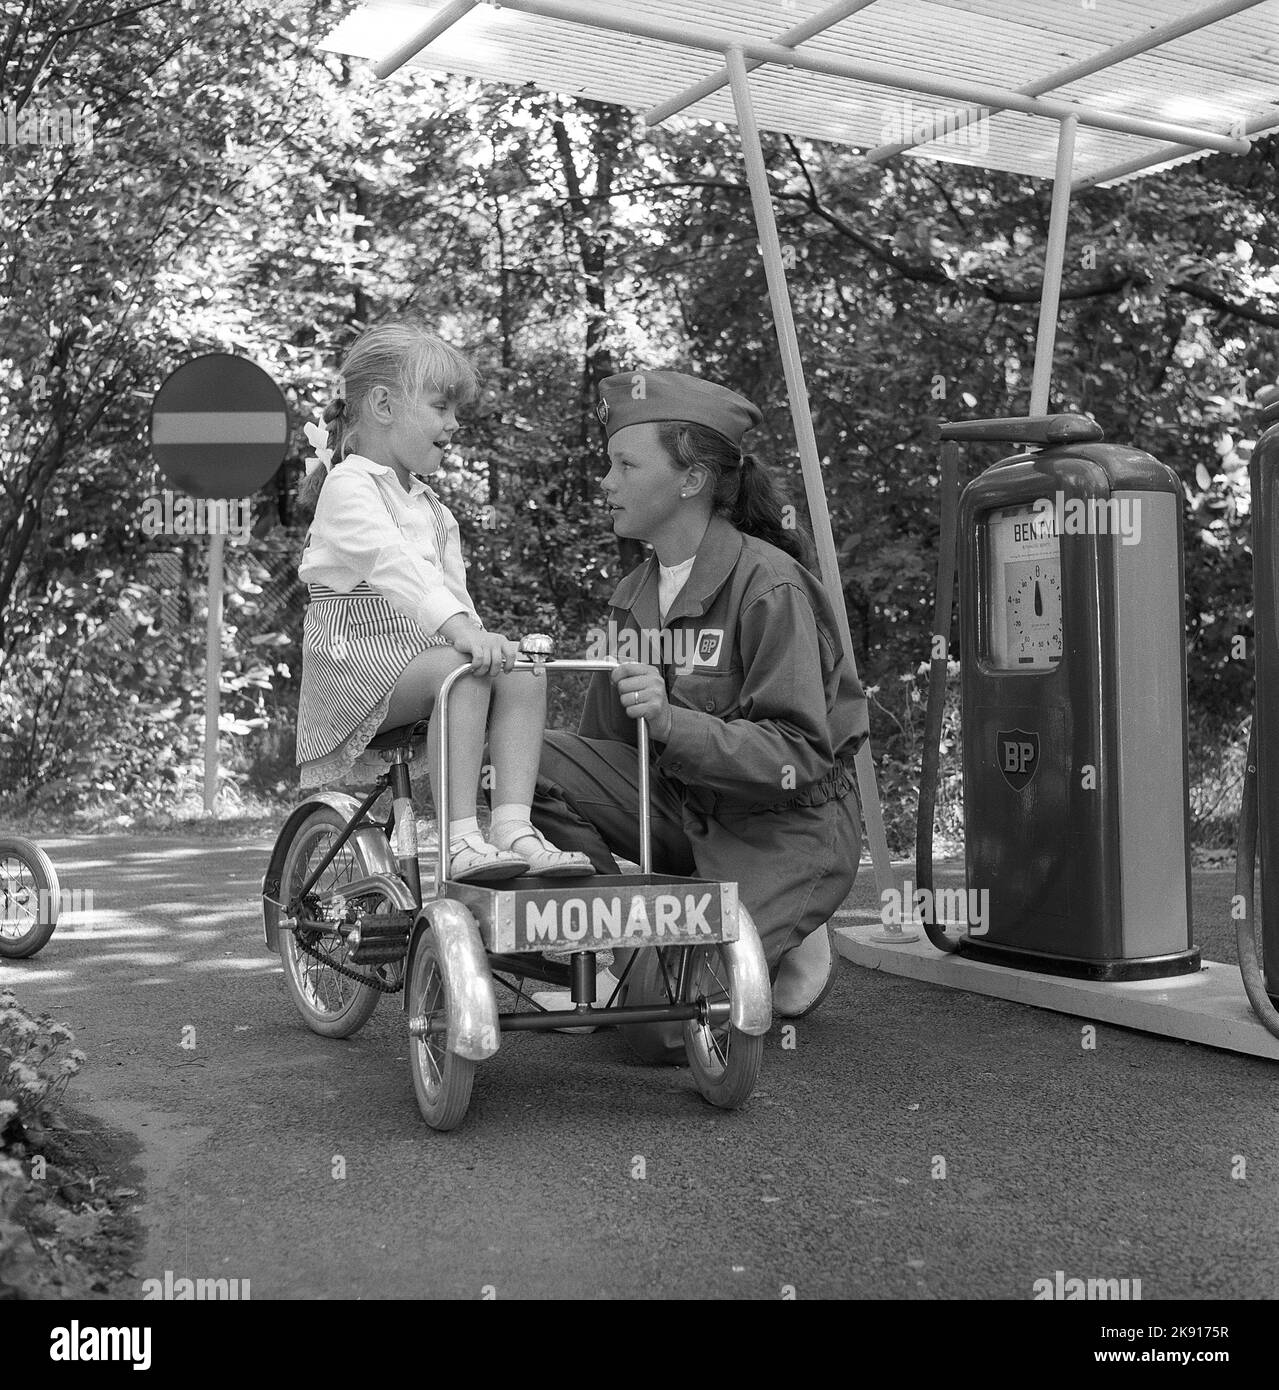 In der 1950s. Ein Mädchen auf einem Dreirad nimmt an einer Kinderverkehrsschule Teil, wo die Kinder lernen, sich im Verkehr zu verhalten. Straßen und Häuser sind kleiner als üblich und sogar die Tankstelle ist da, wo ein Service-Mitarbeiter die Kinder betreut und bei der Make-believe-true-Übung mitspielt. Das Jahr ist 1958. Schweden Ref. CV79 Stockfoto